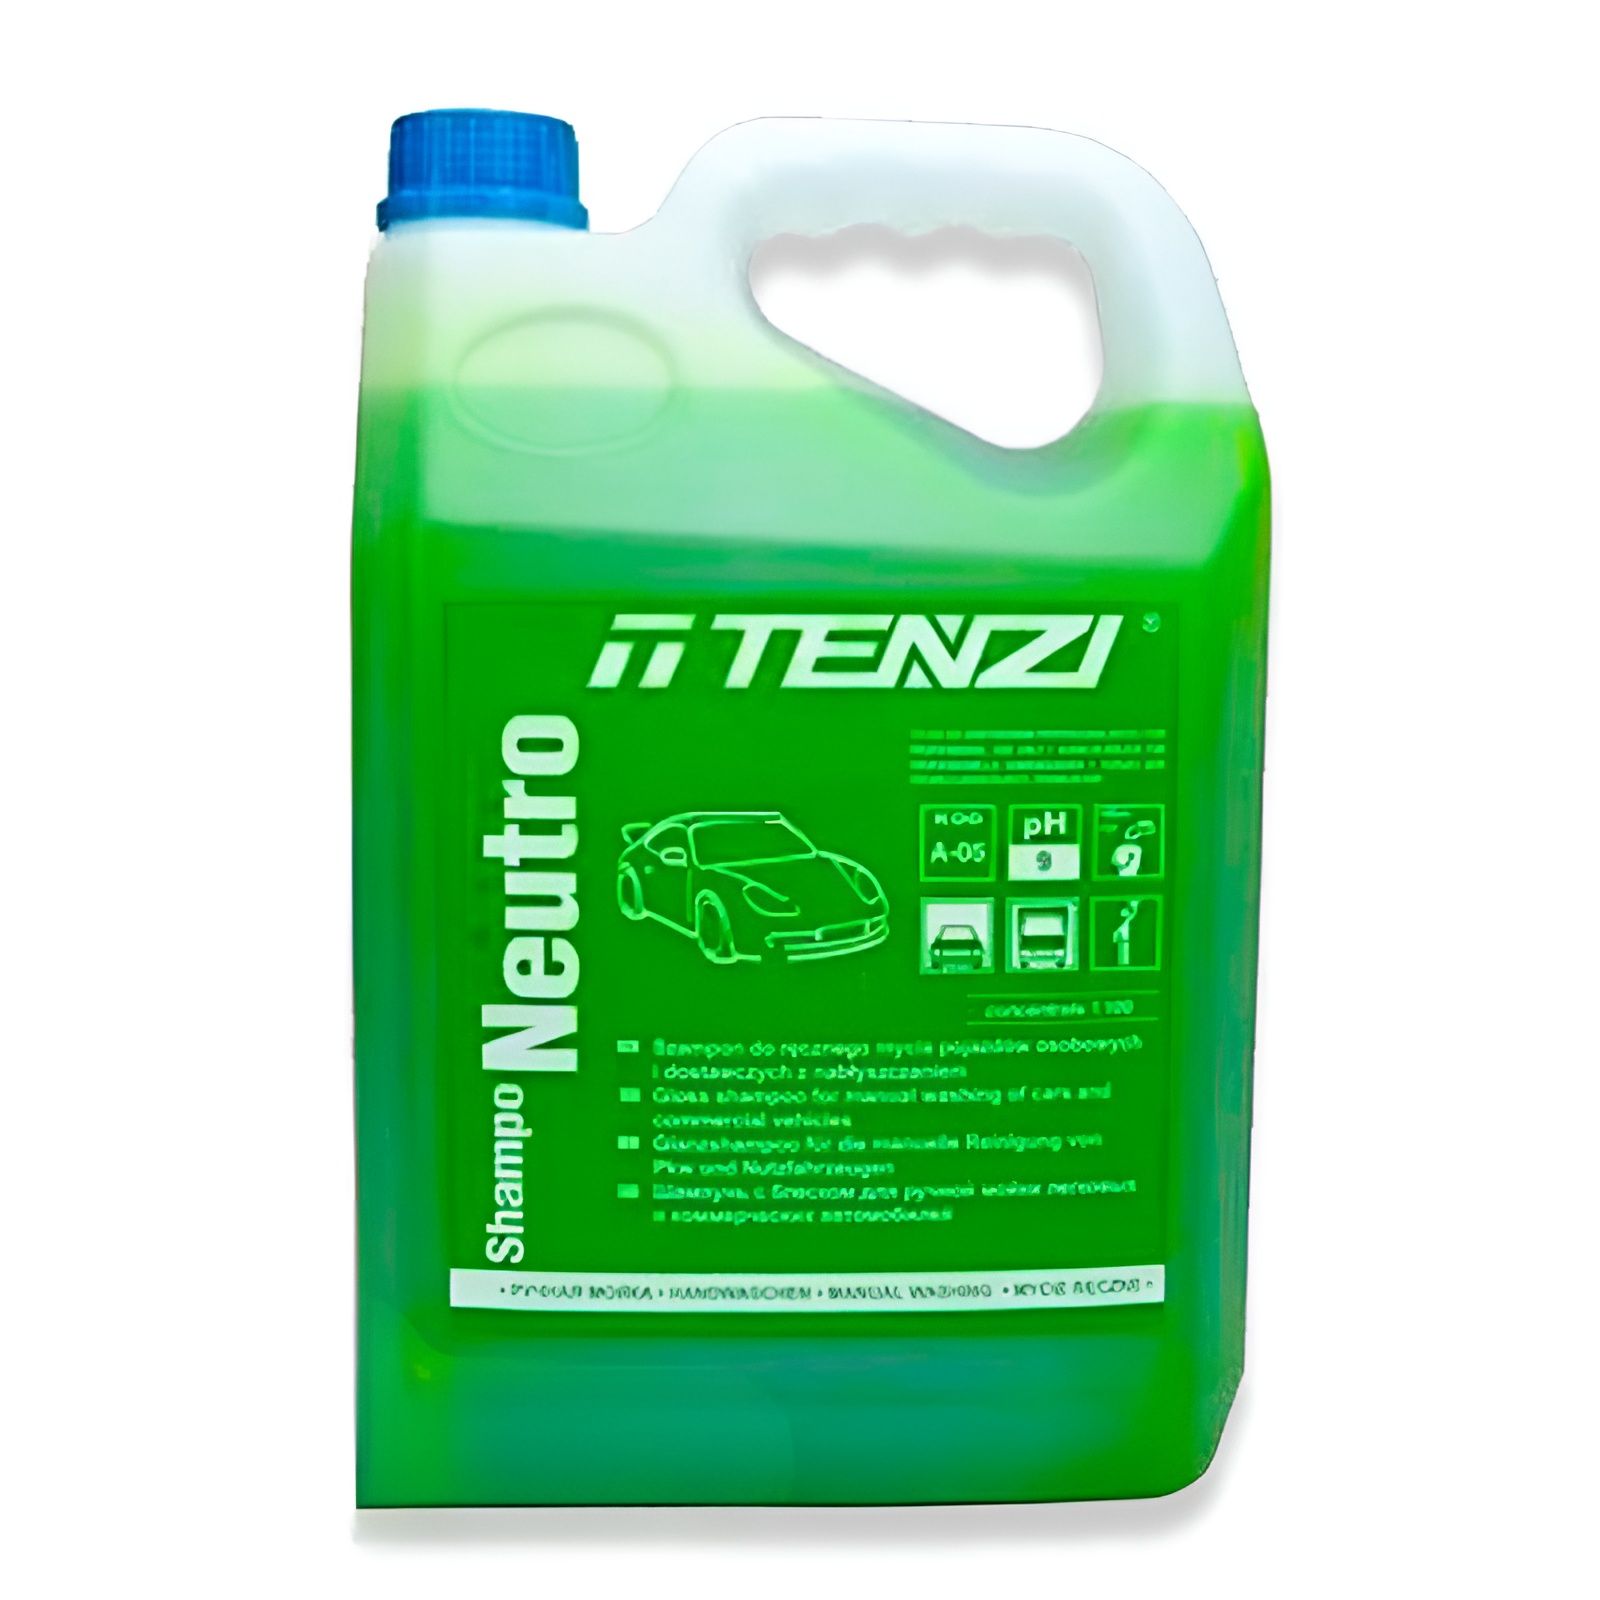  Dung dịch rửa xe có chạm Tenzi – Shampo Neutro 5 lít 